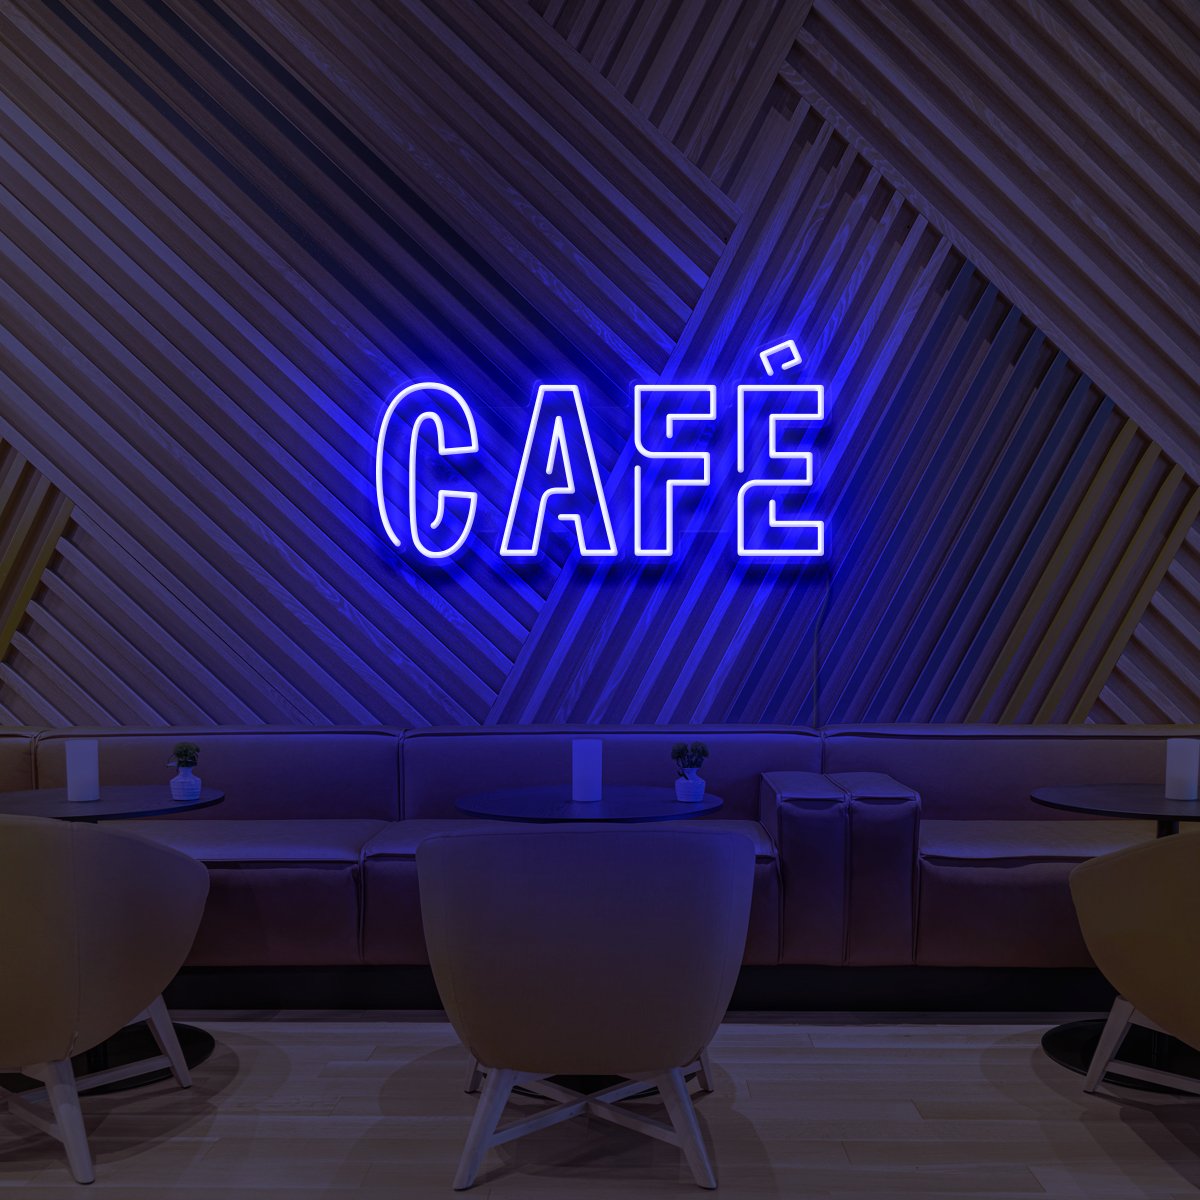 "Café" Neon Sign for Cafés 60cm (2ft) / Blue / LED Neon by Neon Icons